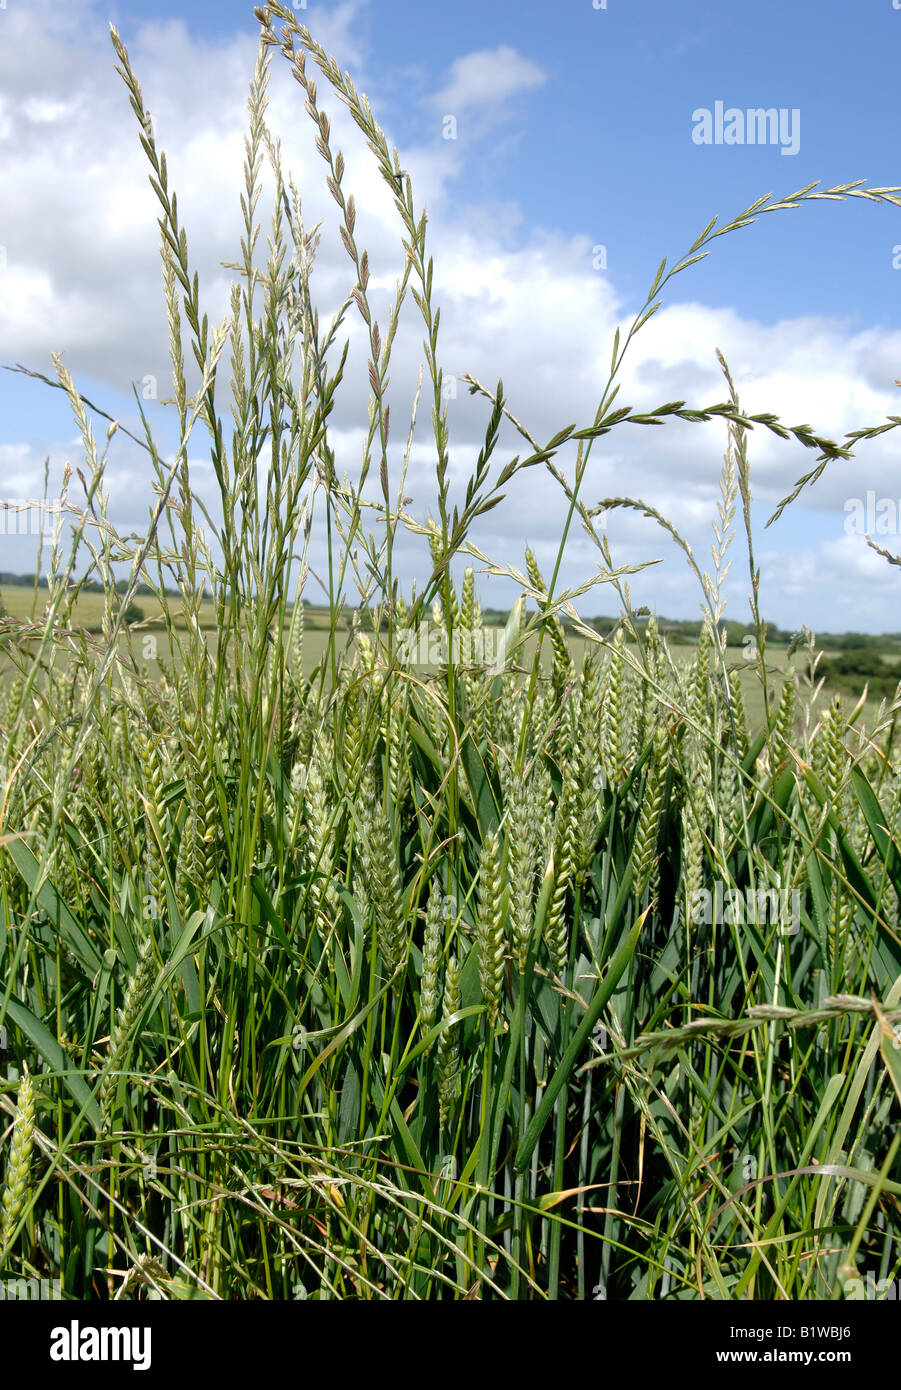 Ballica perenne Lolium perenne espigas de gramíneas en un cultivo de trigo en espiga Foto de stock